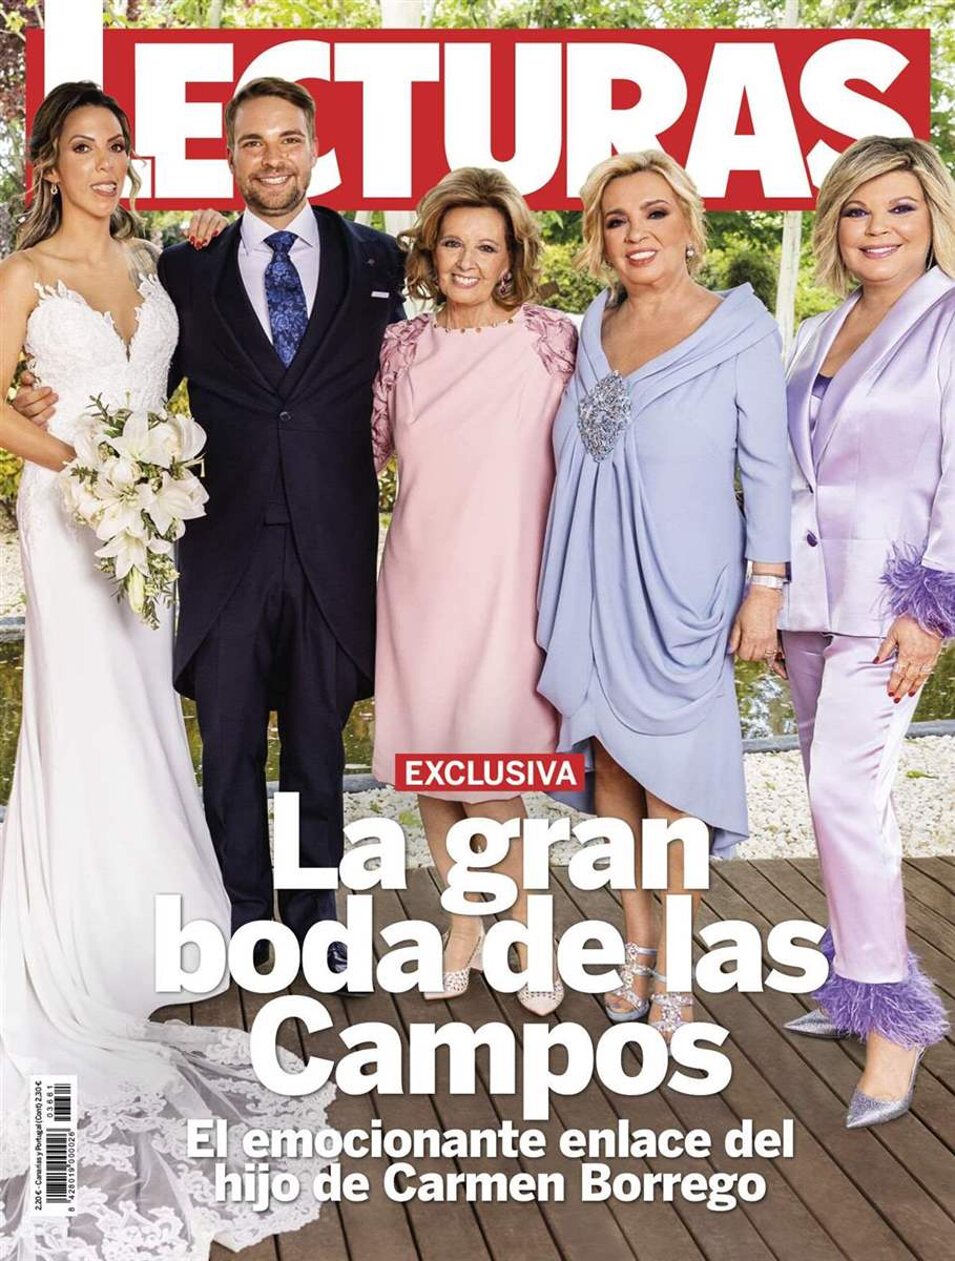 La exclusiva de la boda la cobraron José María y Paola | Foto: Lecturas